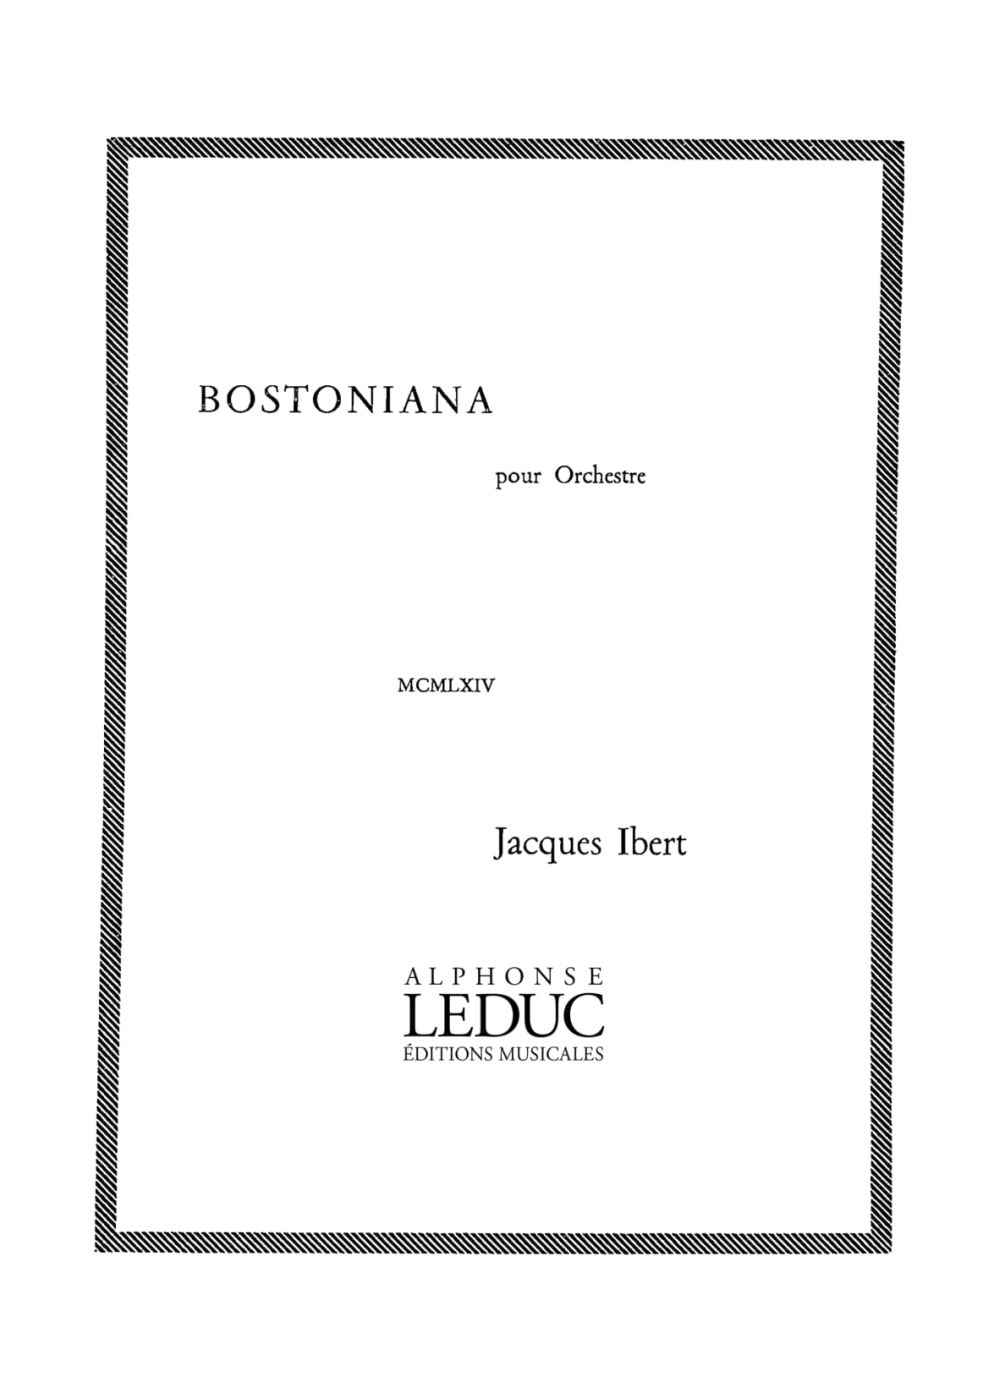 Jacques Ibert: Bostoniana